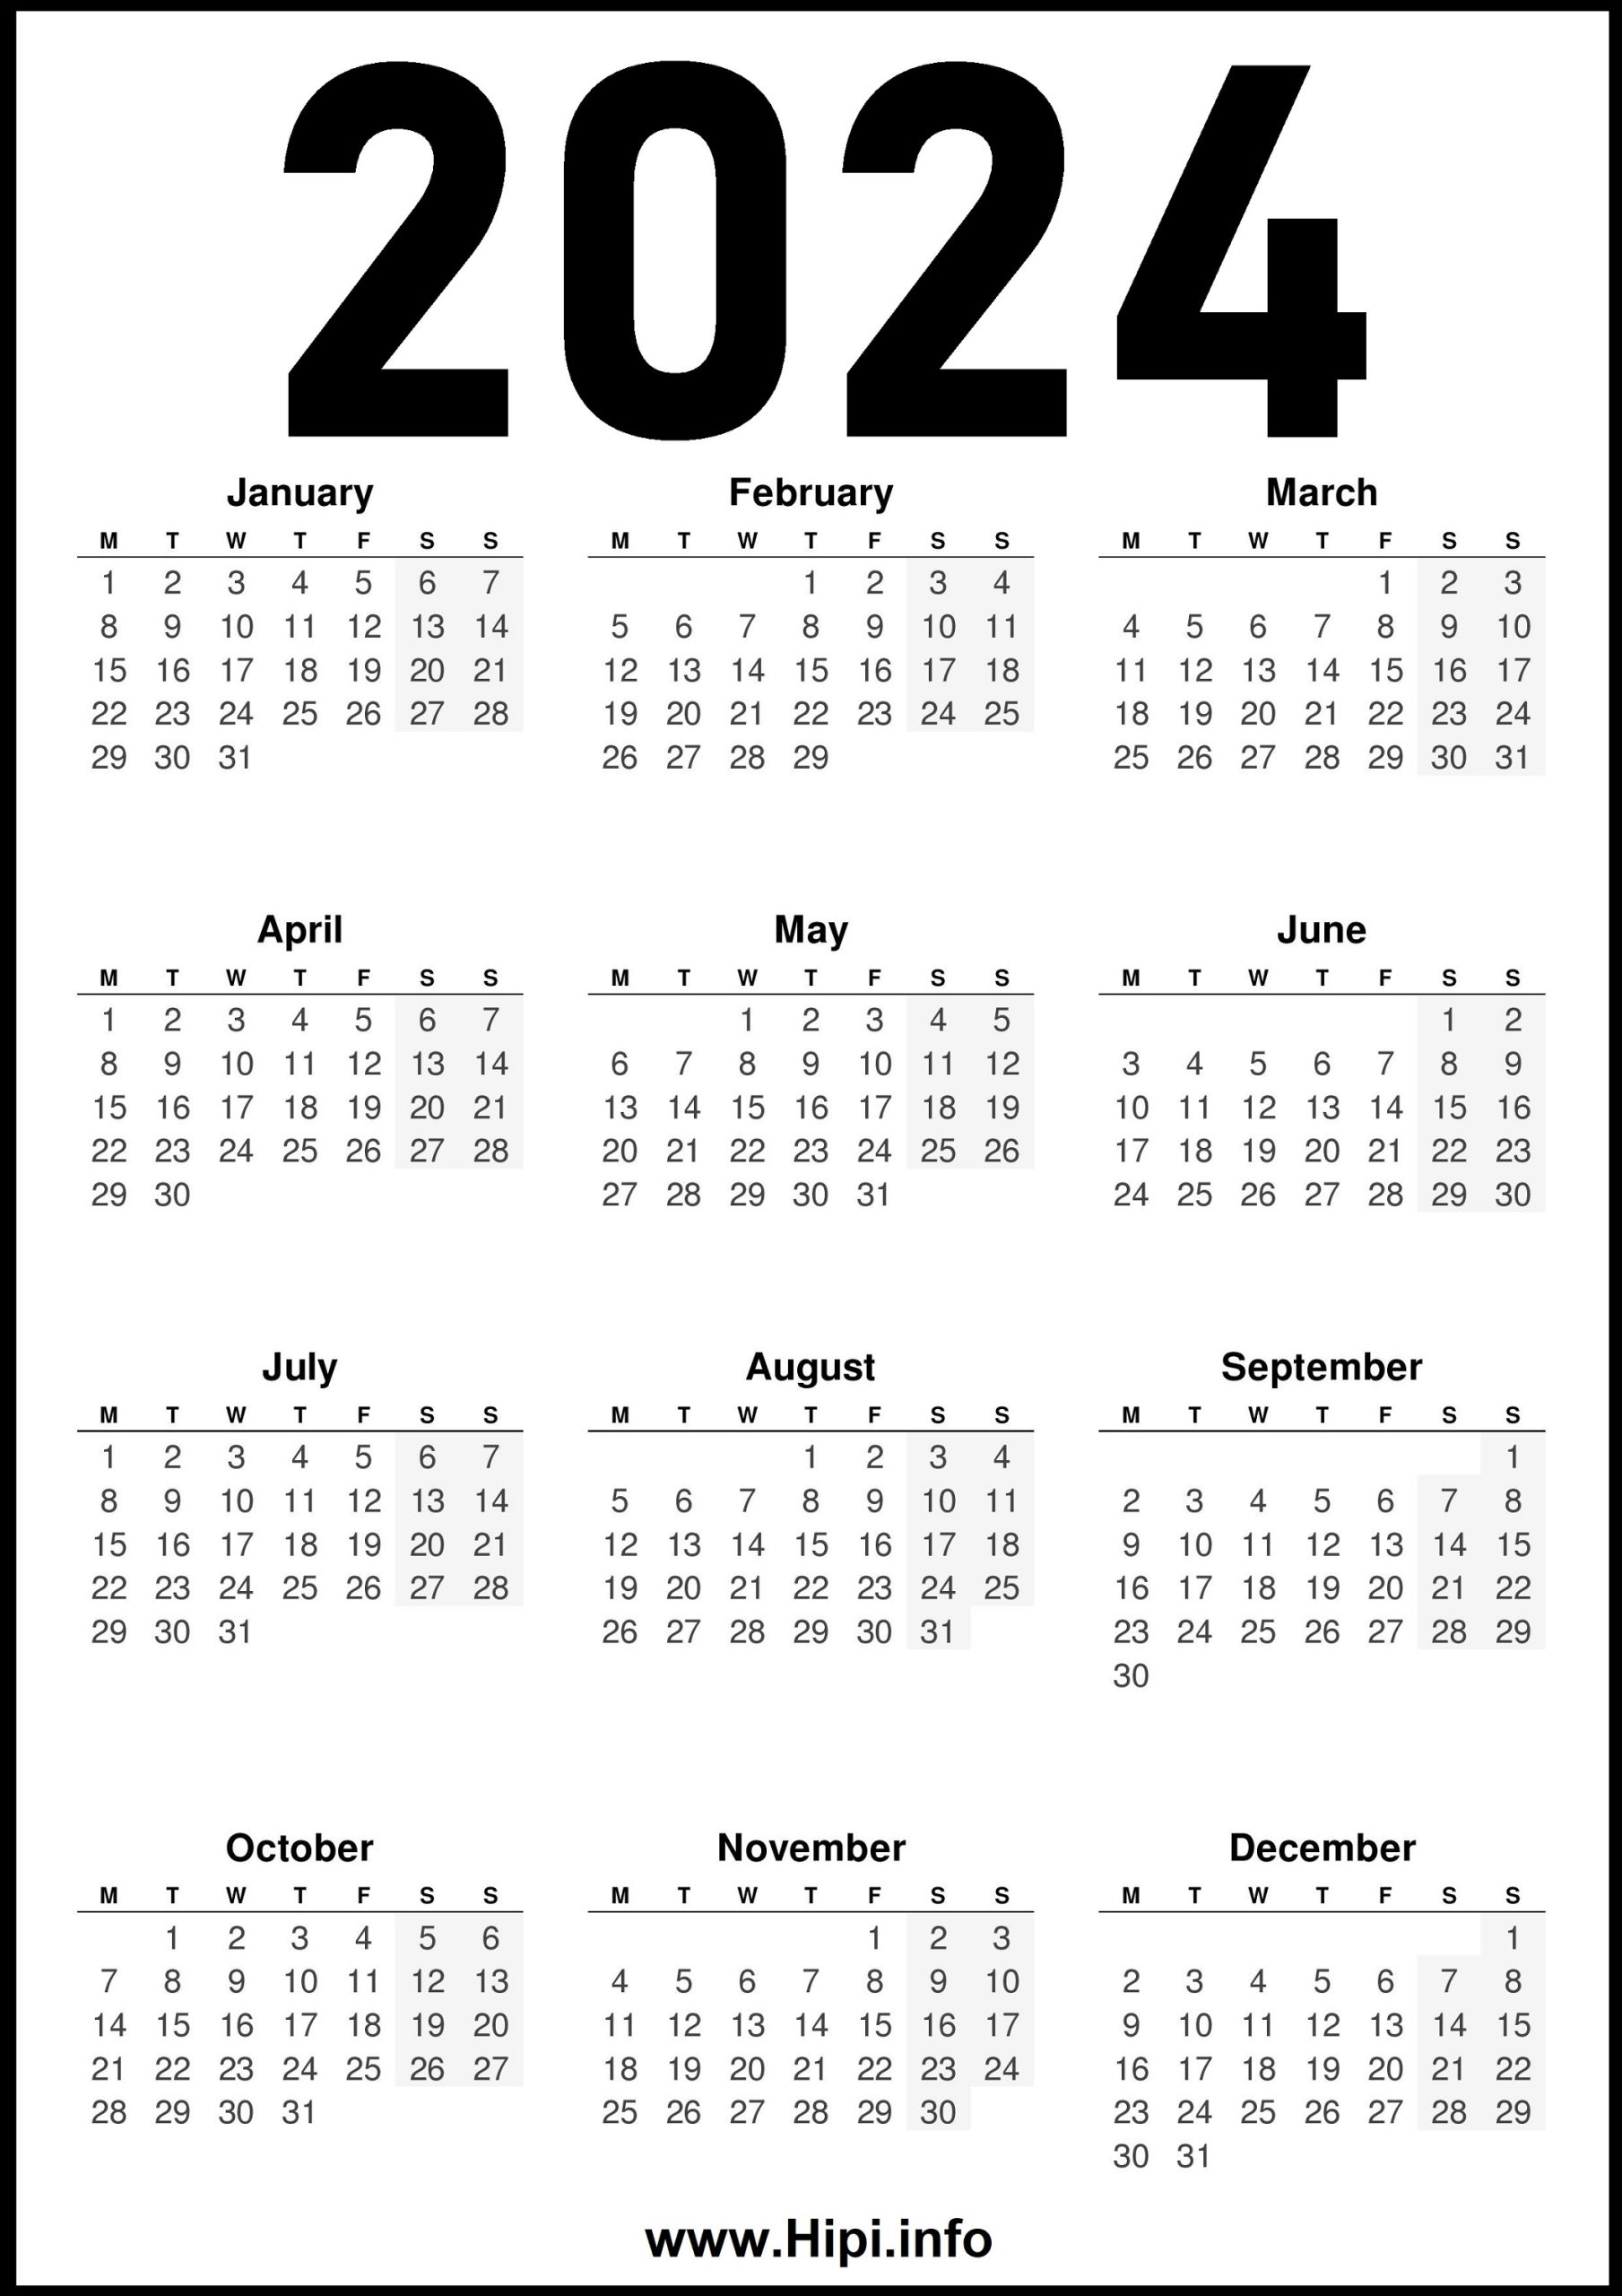 2024-united-kingdom-uk-calendar-hipi-info